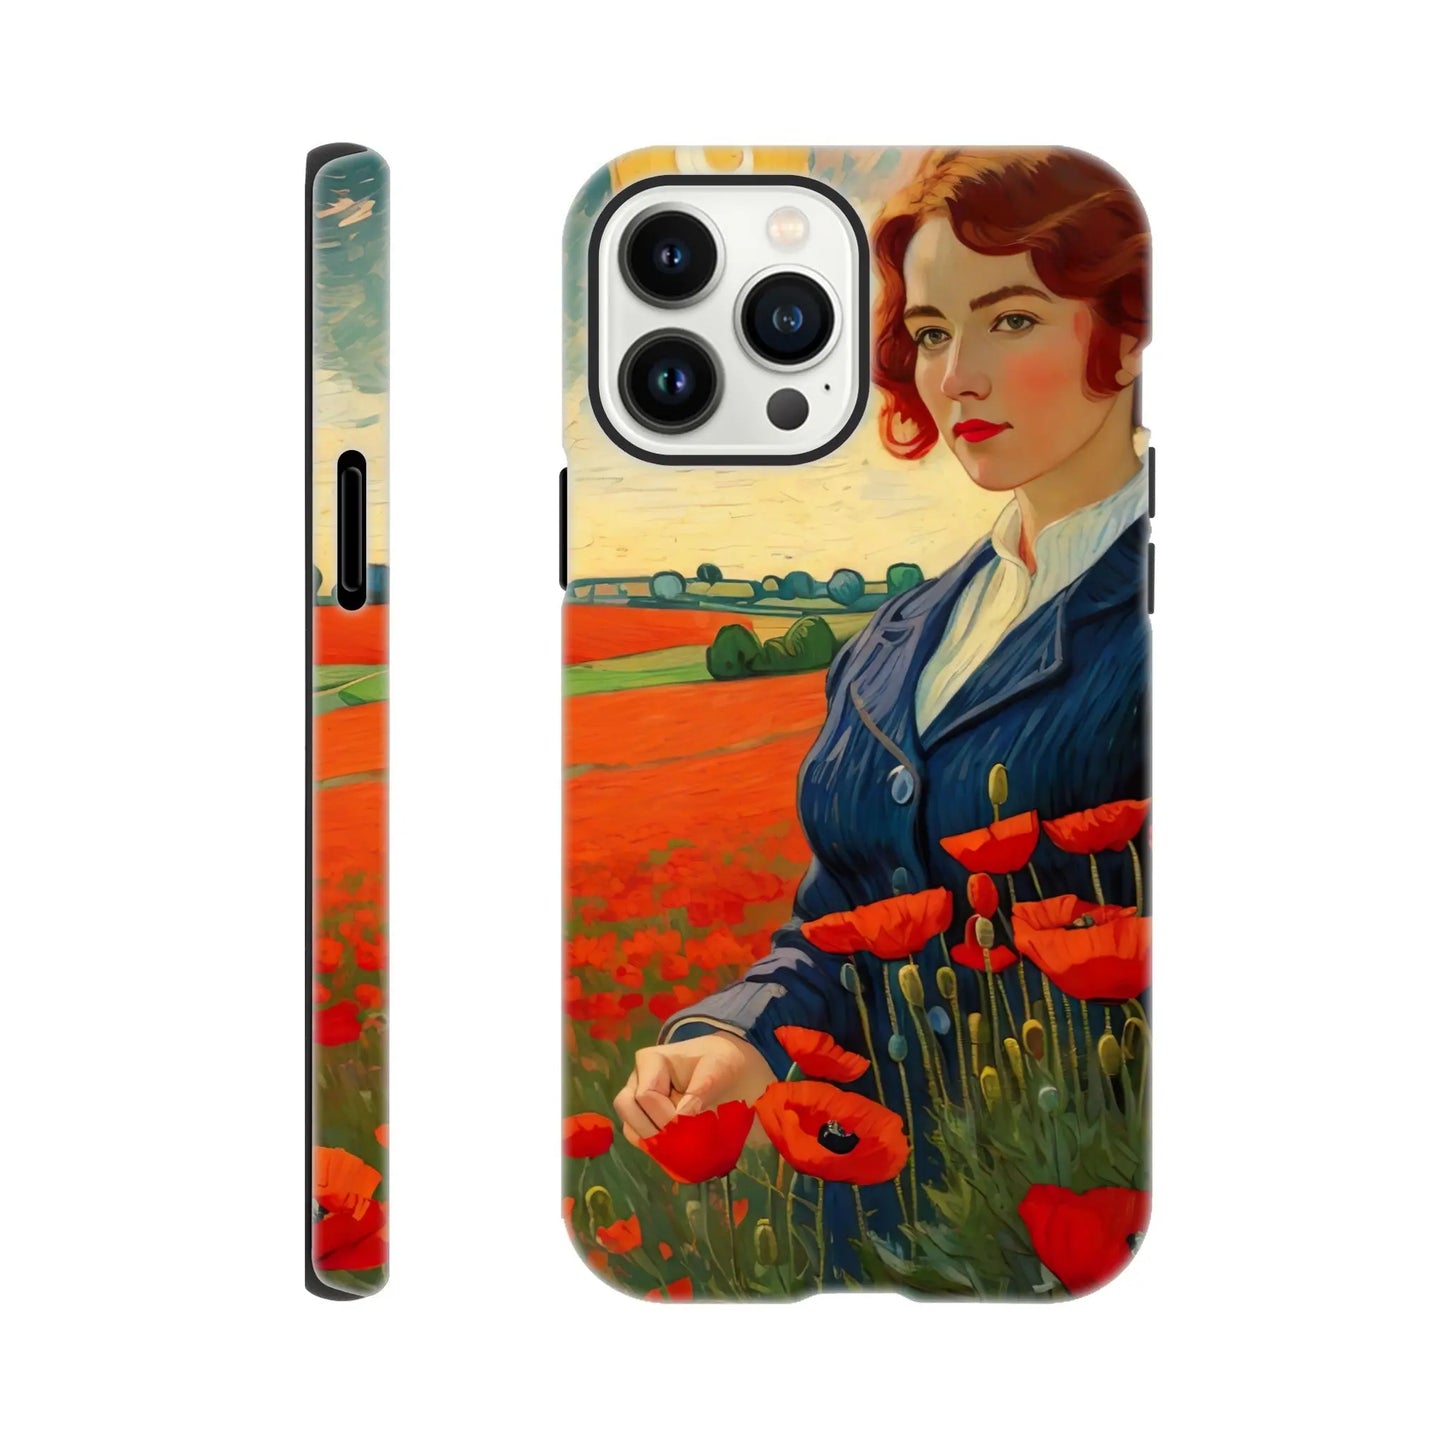 Smartphone-Hülle "Hart" - Blütezeit - Malerischer Stil, KI-Kunst RolConArt, Landschaften, iPhone-13-Pro-Max